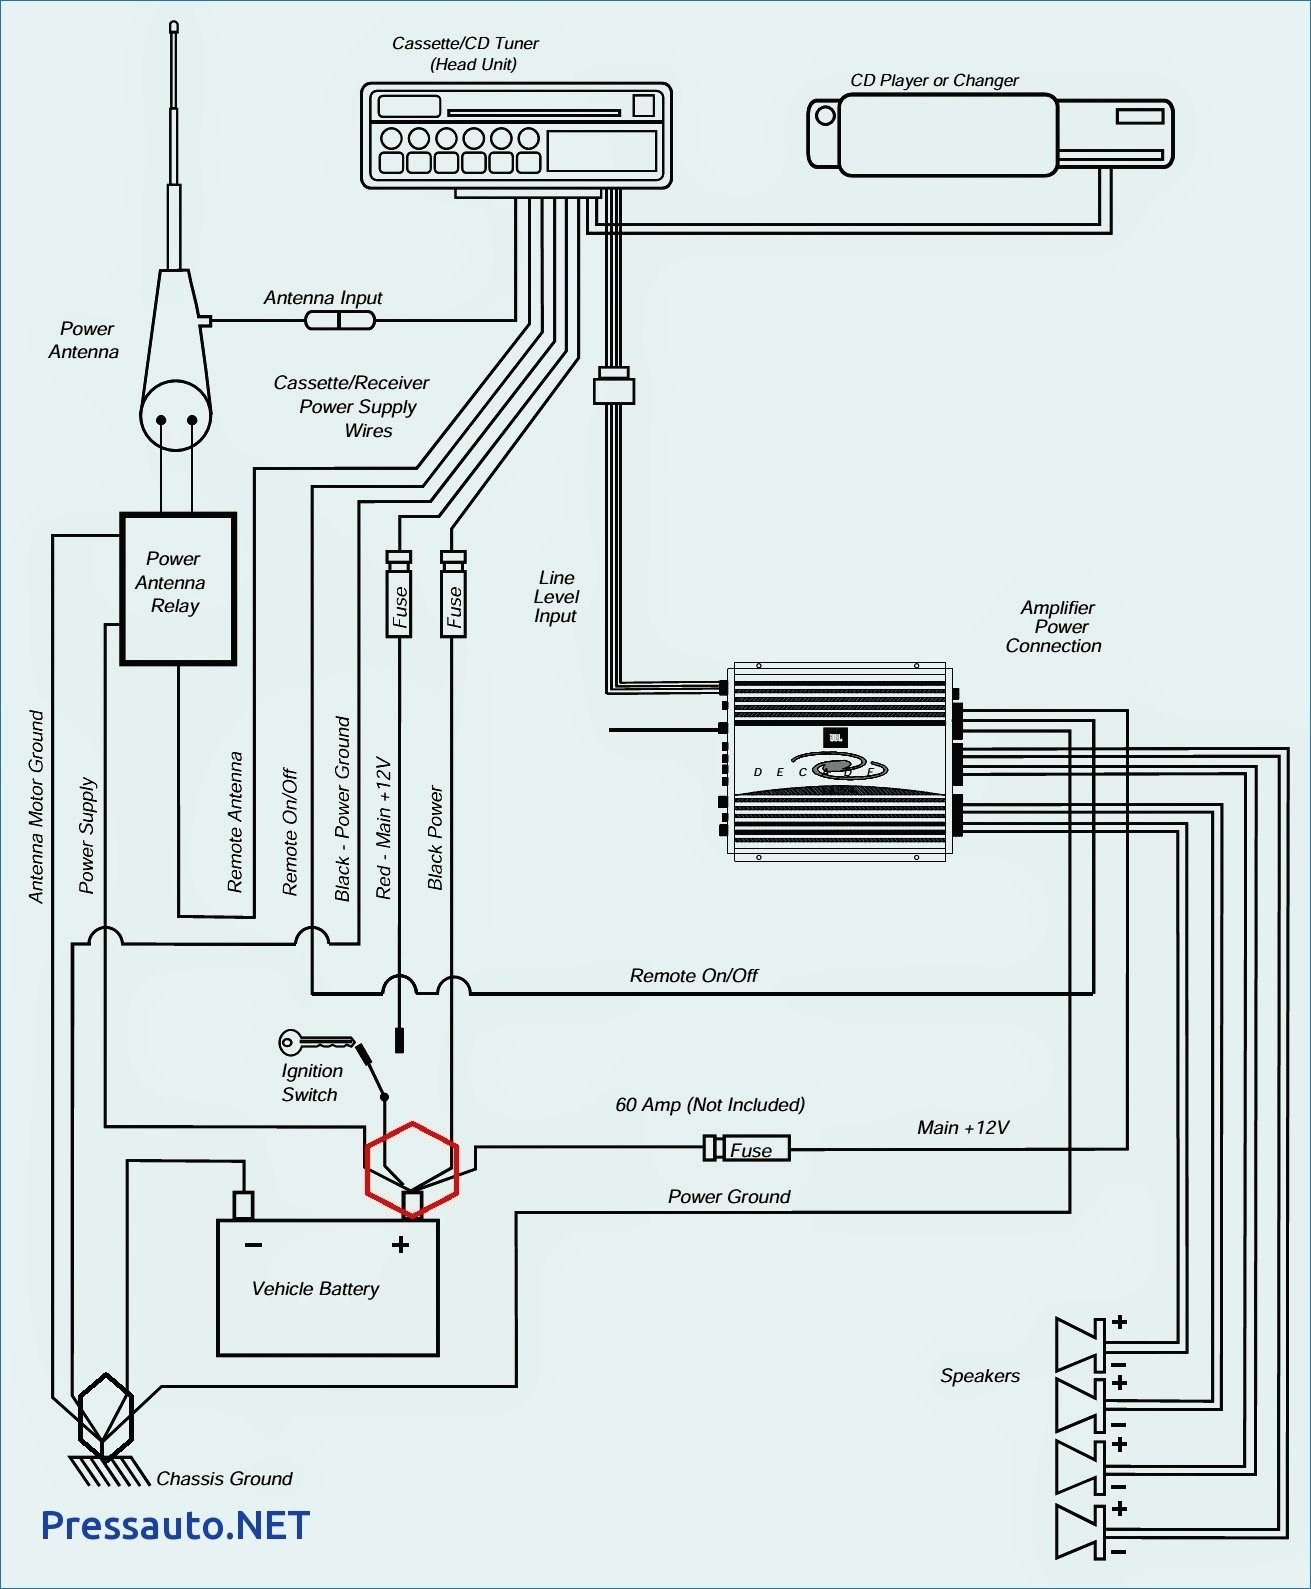 Nutnicha29060601.2Waky | Alpine Power Pack Wiring Diagram Ktp - Alpine Ktp-445U Wiring Diagram